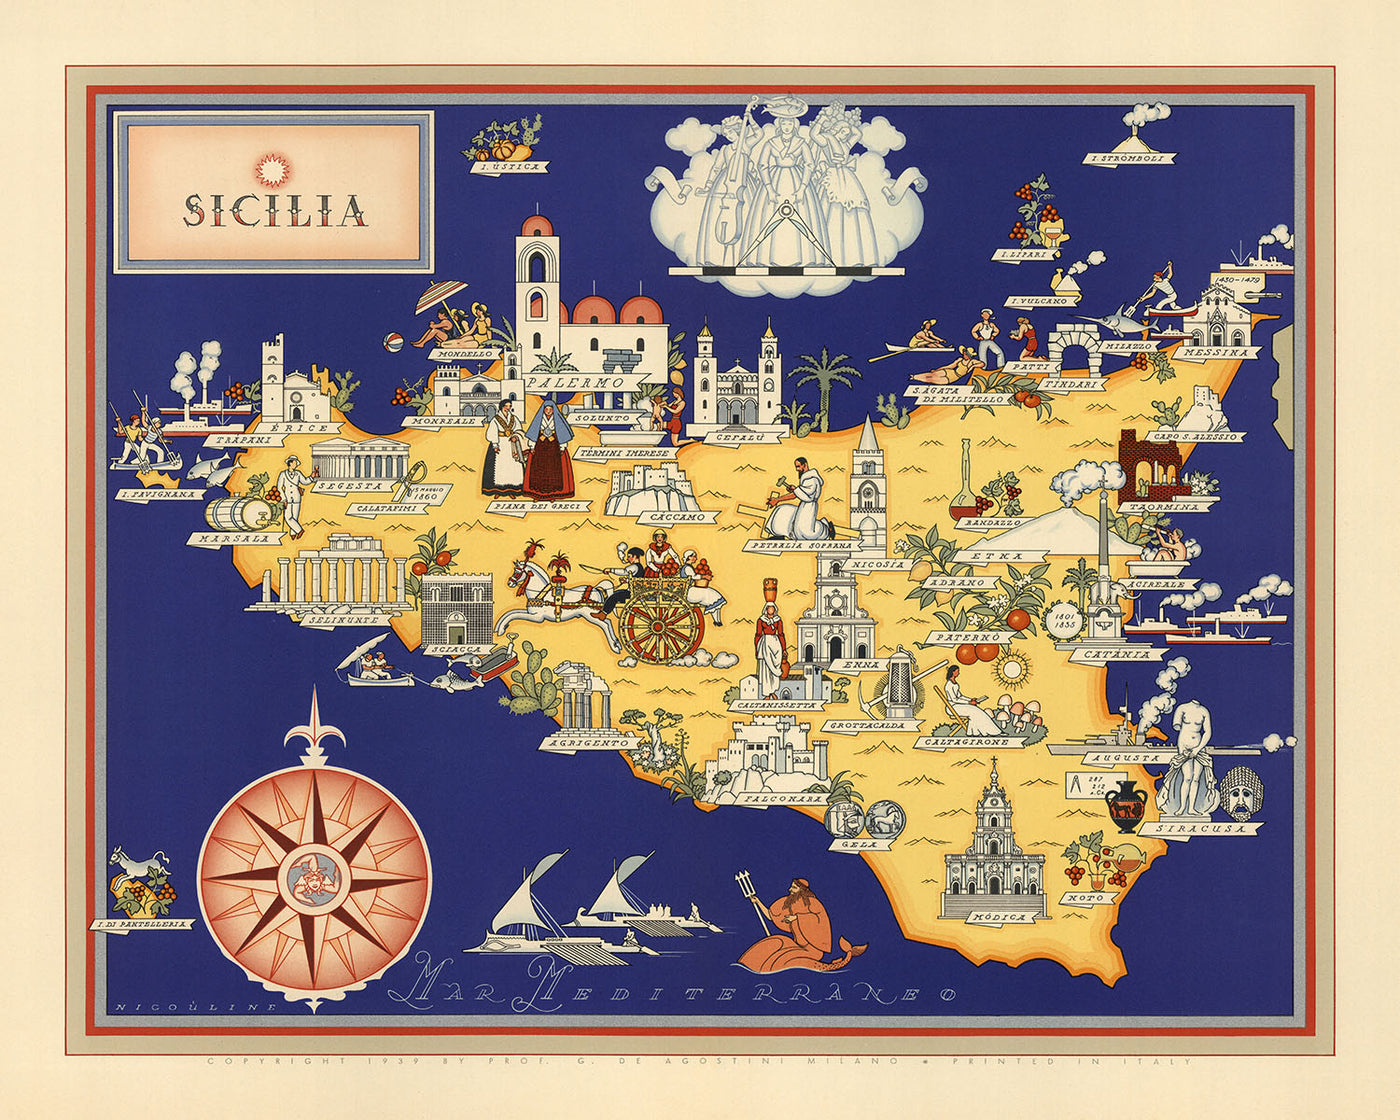 Antiguo mapa pictórico de Sicilia de De Agostini, 1938: Palermo, Catania, Messina, Parco Nazionale dell'Etna, Parco Nazionale dei Nebrodi